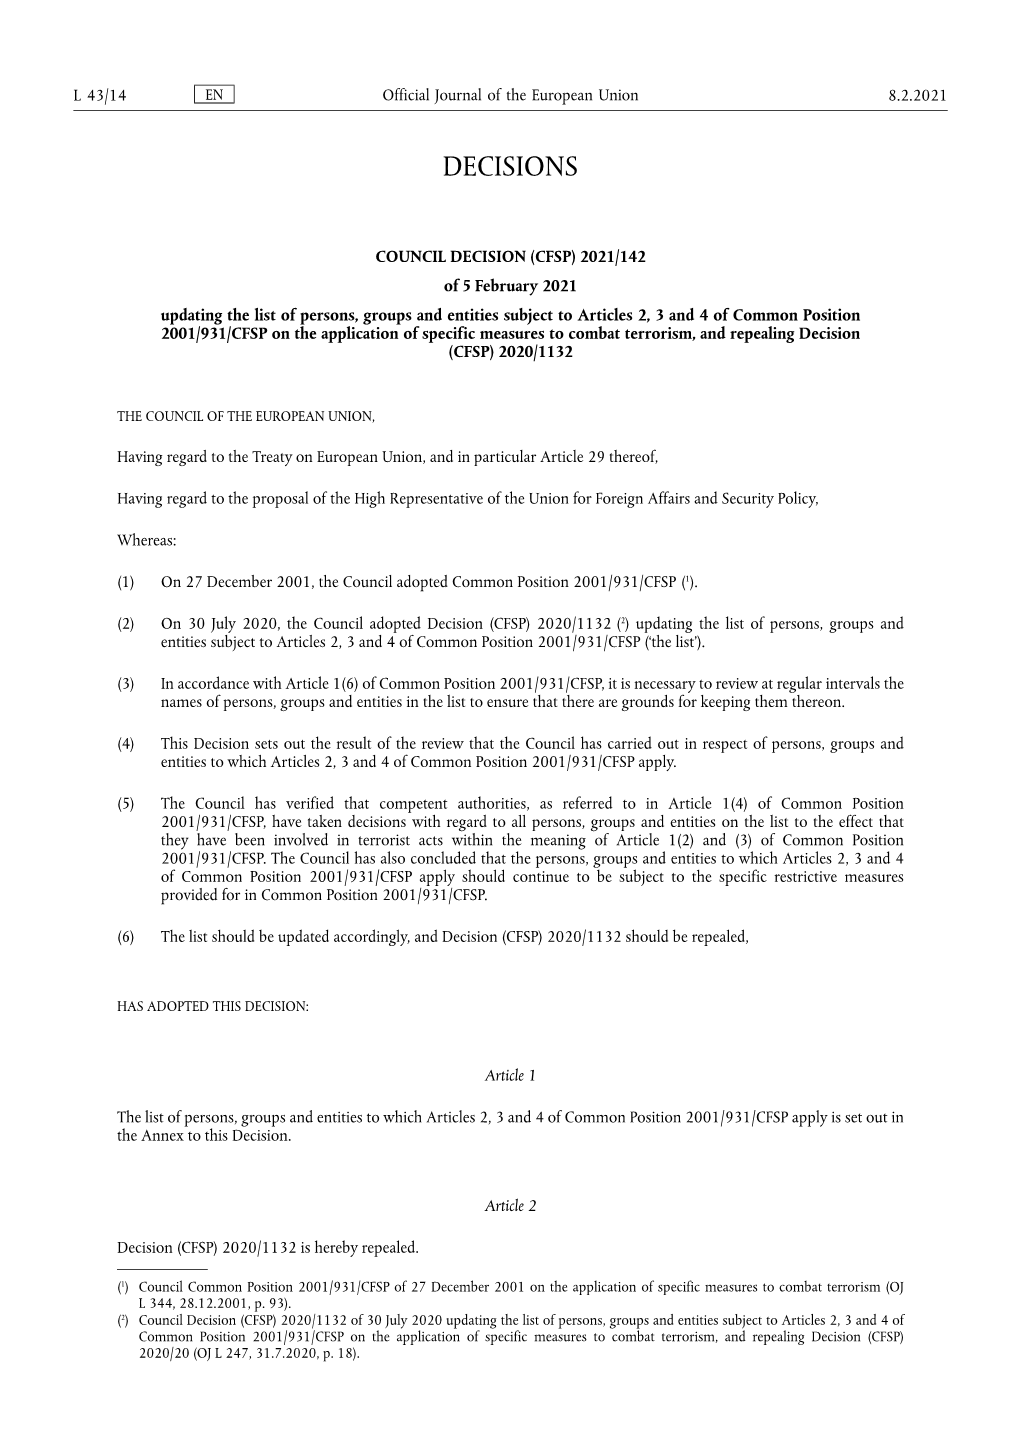 Council Decision (Cfsp)